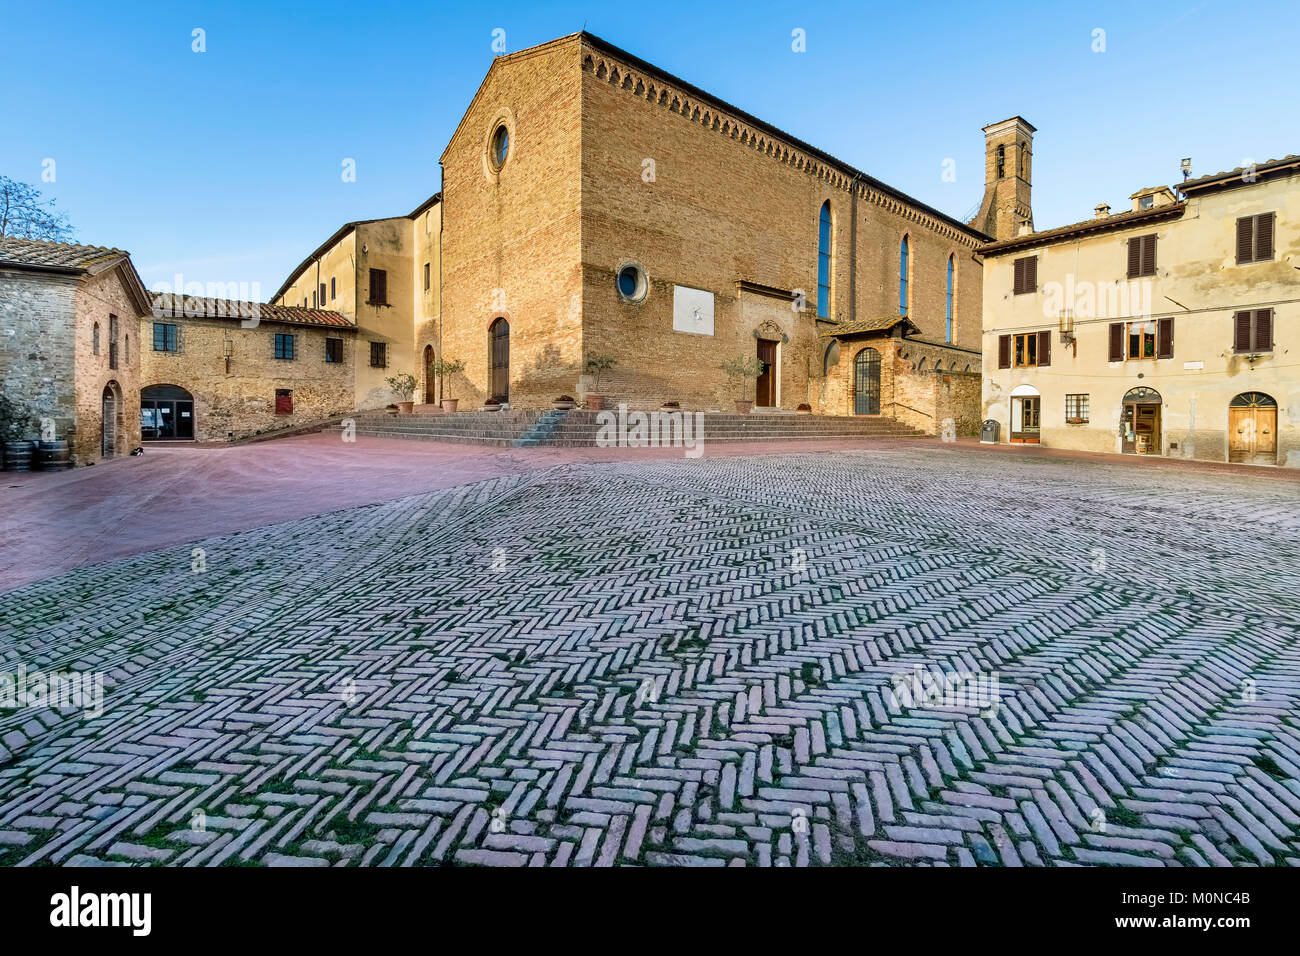 Sant'Agostino's church in San Gimignano, Siena, Tuscany, Italy Stock Photo